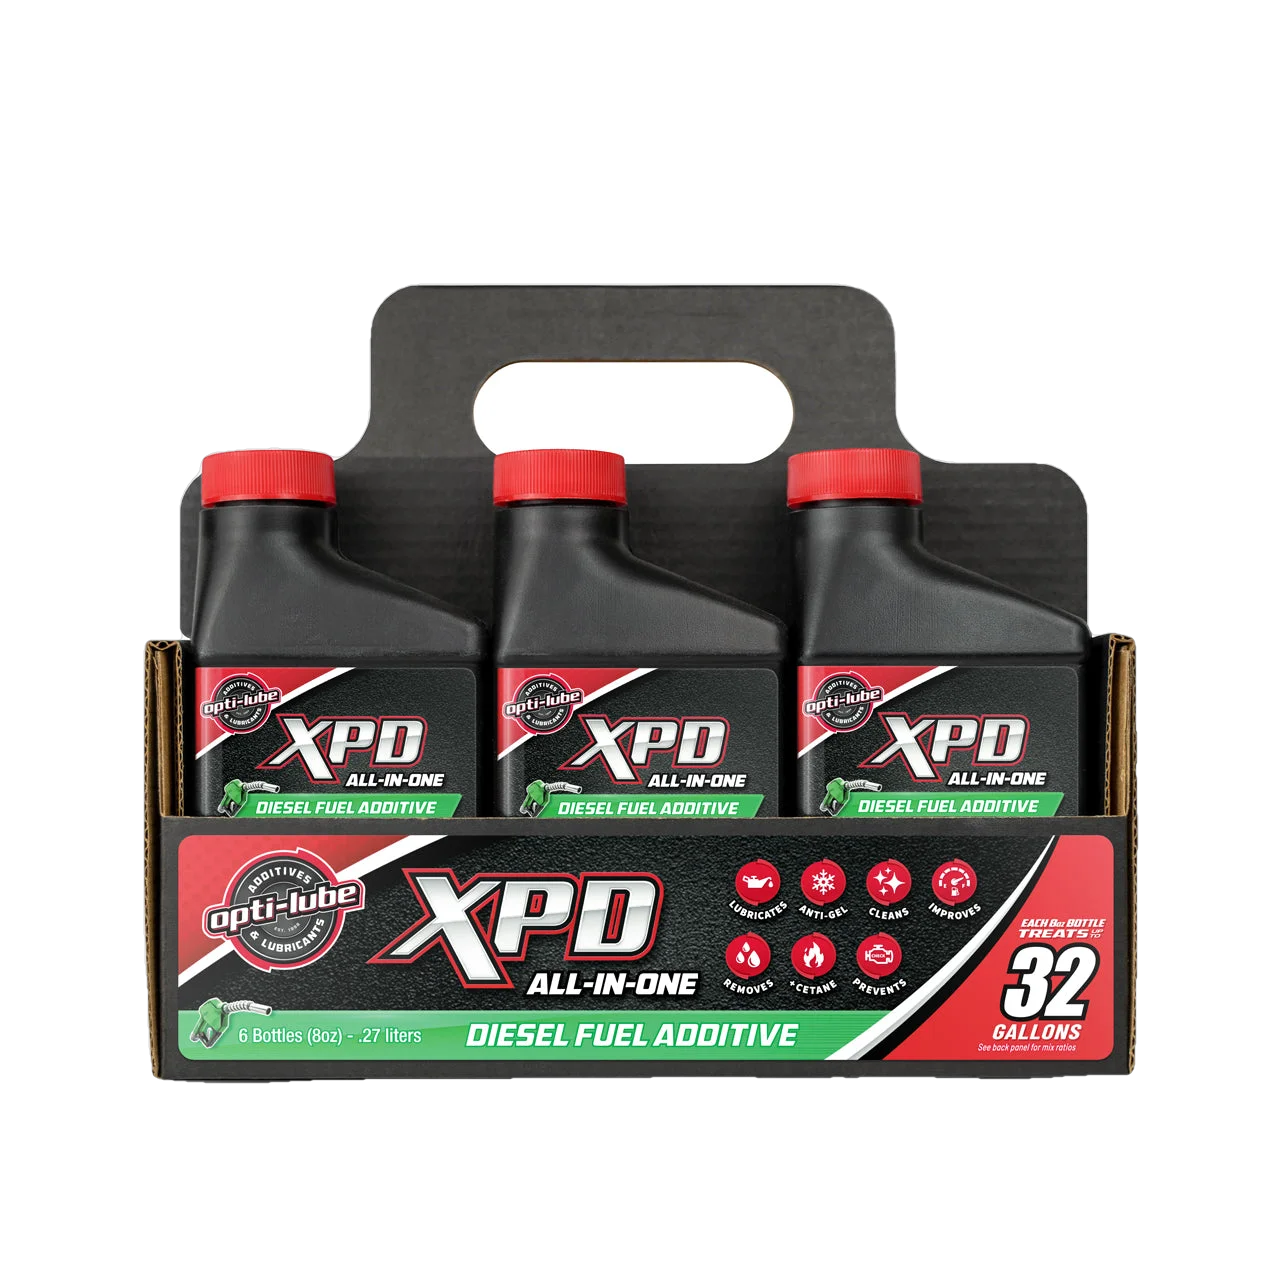 XDP Diesel Power Plus Fuel Additive All Diesel Engines 16 Oz. Bottle T –  Full Send Diesel